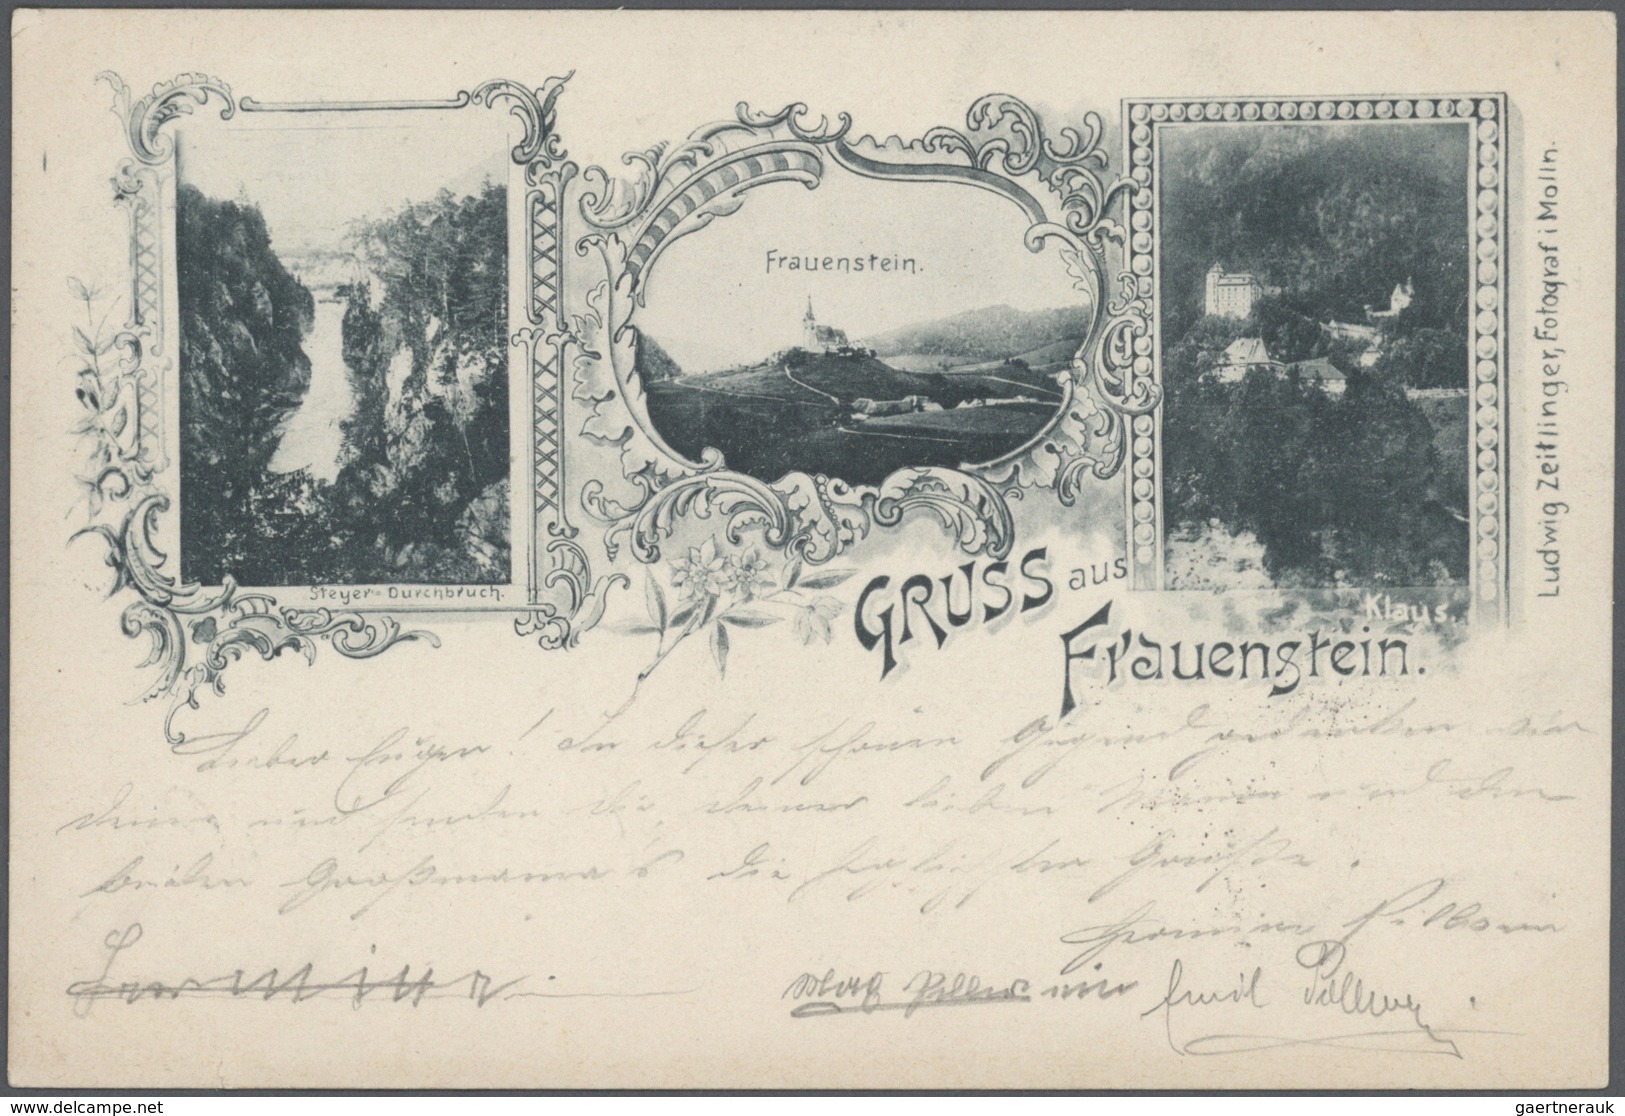 Ansichtskarten: Österreich: 1893/1940 (ca.), Partie von ca. 180 Topographie-Karten incl. Südtirol, a